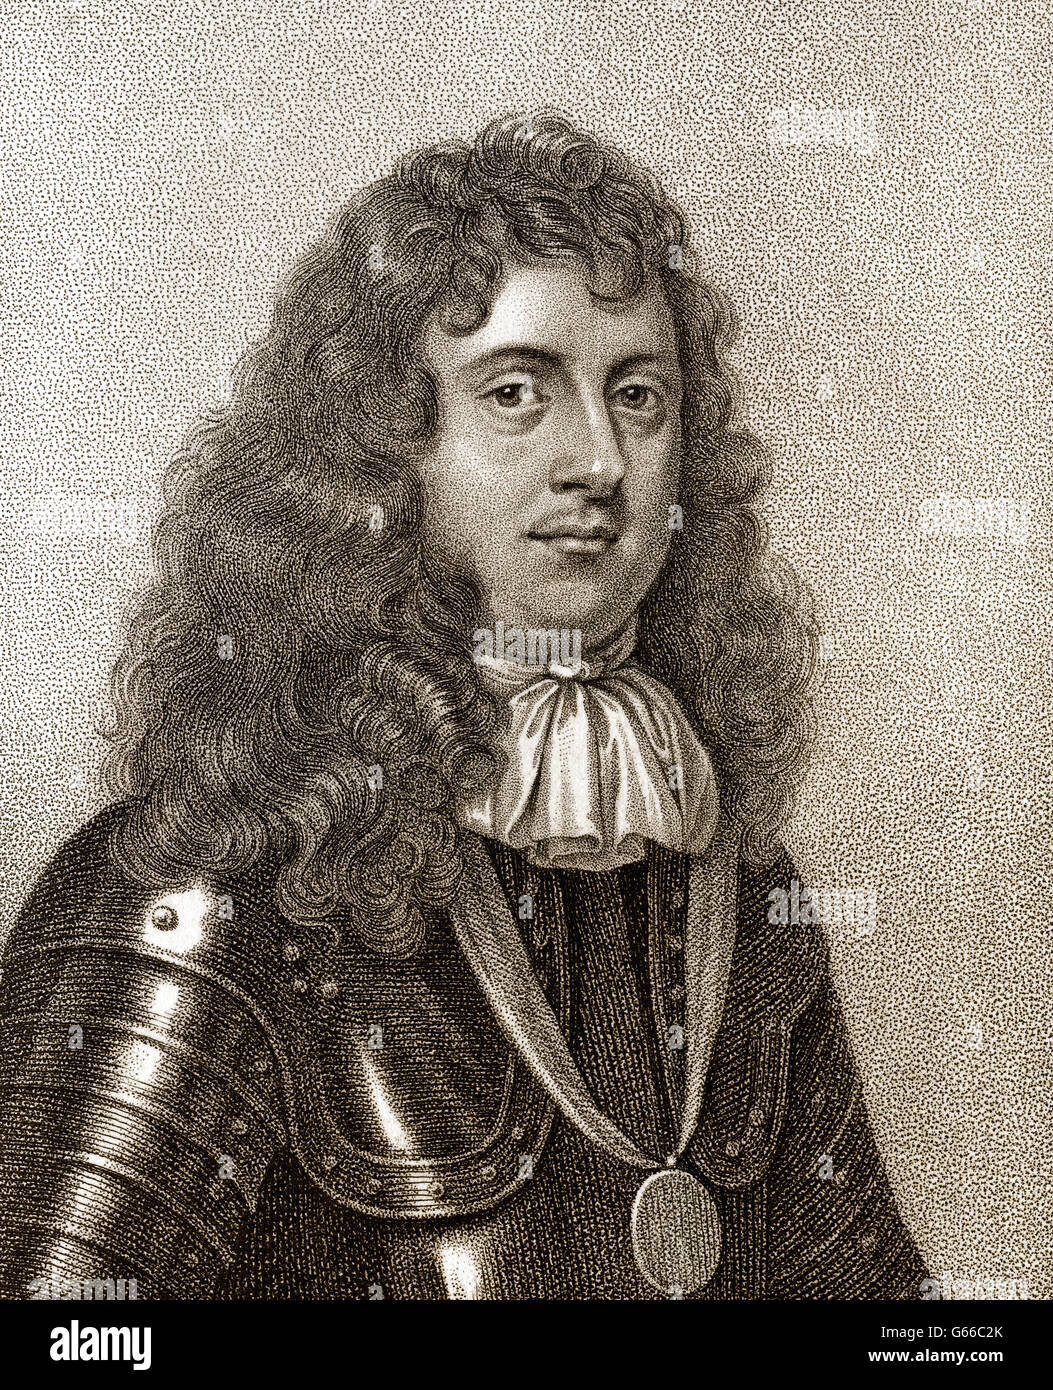 Edward Montagu, 1. Earl of Sandwich, 1625-1672, eine englische Infanterie-Offizier, Marineoffizier und Politiker Stockfoto